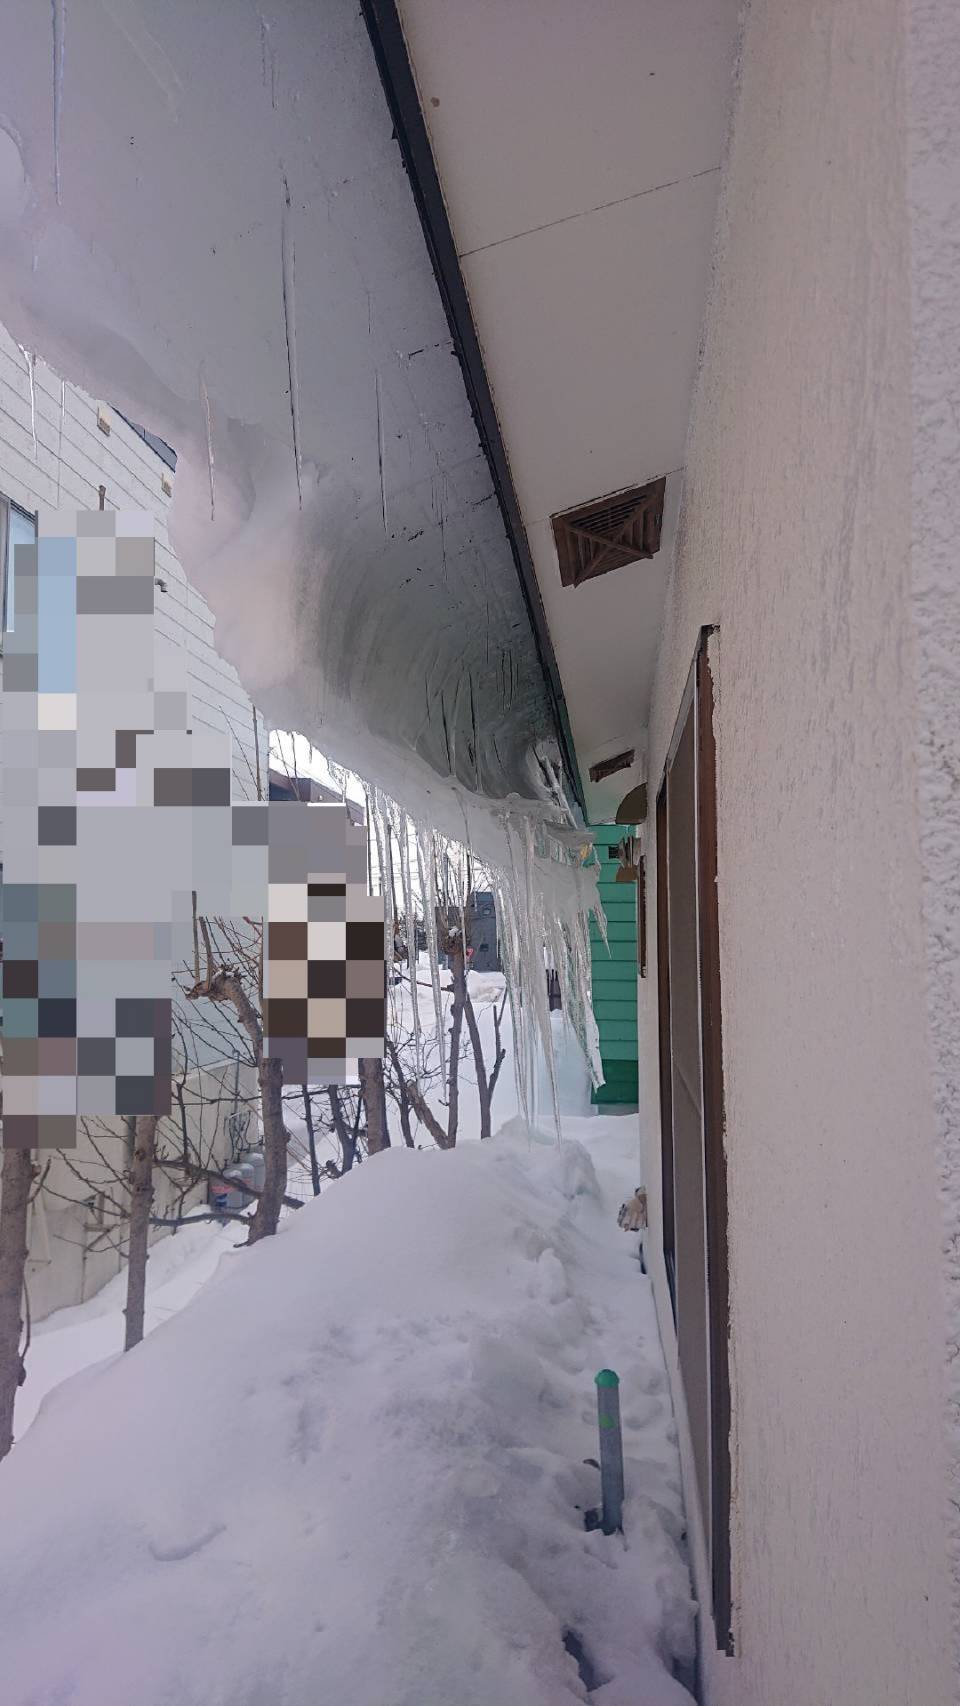 札幌市 無料で雪かきしに行きます 3 5まで 北大生 今日の依頼 84歳独り暮らしの方のつらら落とし 屋根に登ろうとする度に とめられました ローファーで来た僕を温かく迎えてくれました T Co Hjp1dujnj1 Twitter